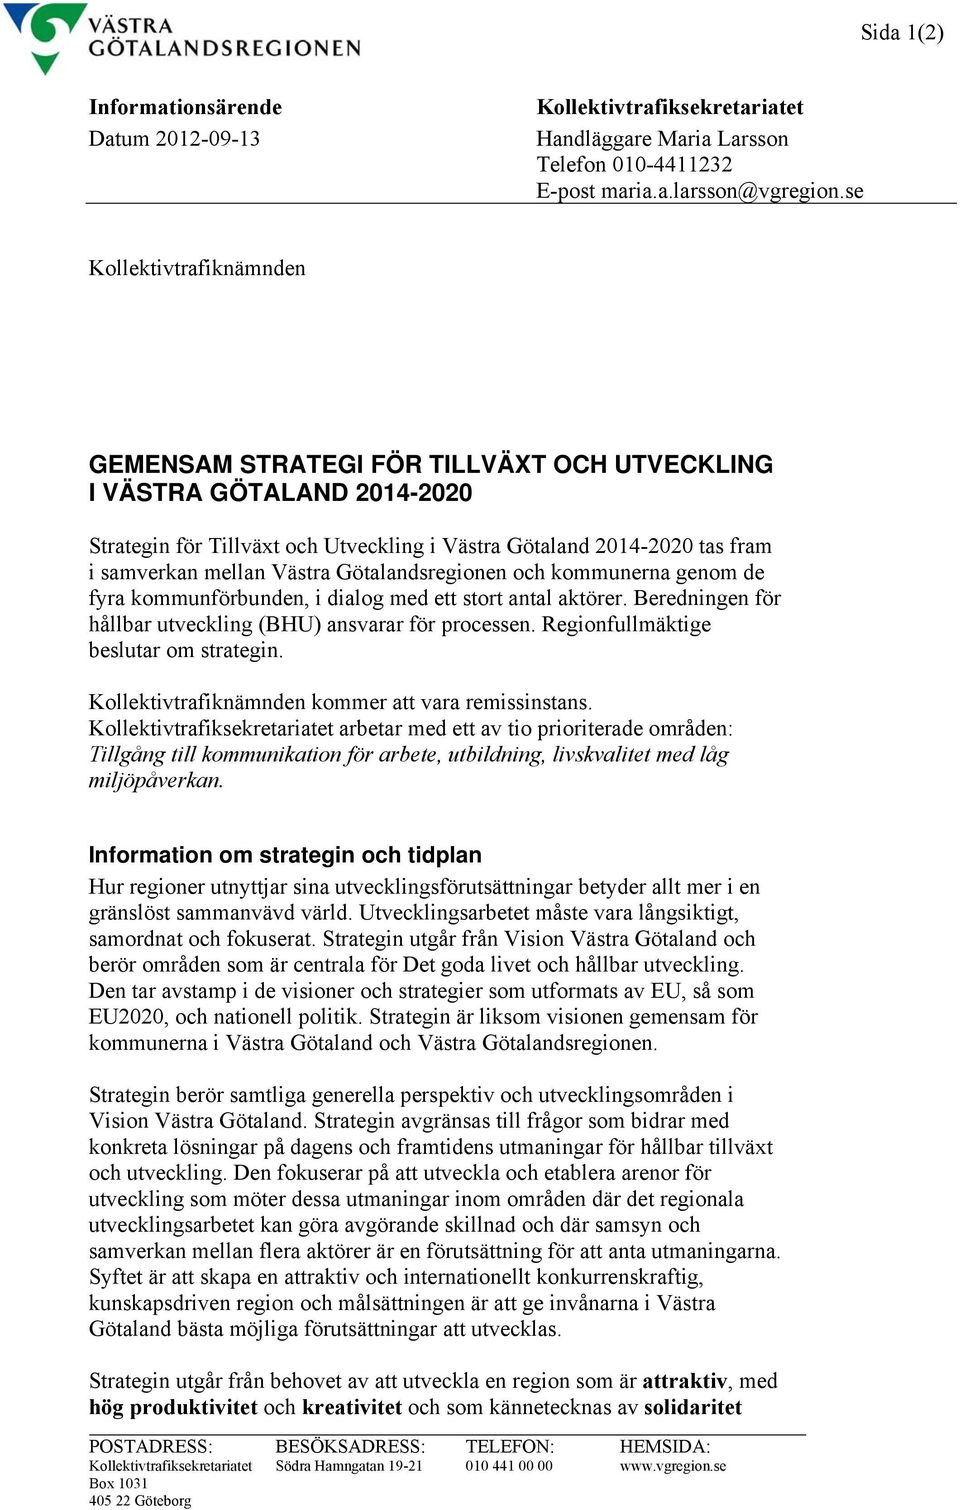 Västra Götalandsregionen och kommunerna genom de fyra kommunförbunden, i dialog med ett stort antal aktörer. Beredningen för hållbar utveckling (BHU) ansvarar för processen.